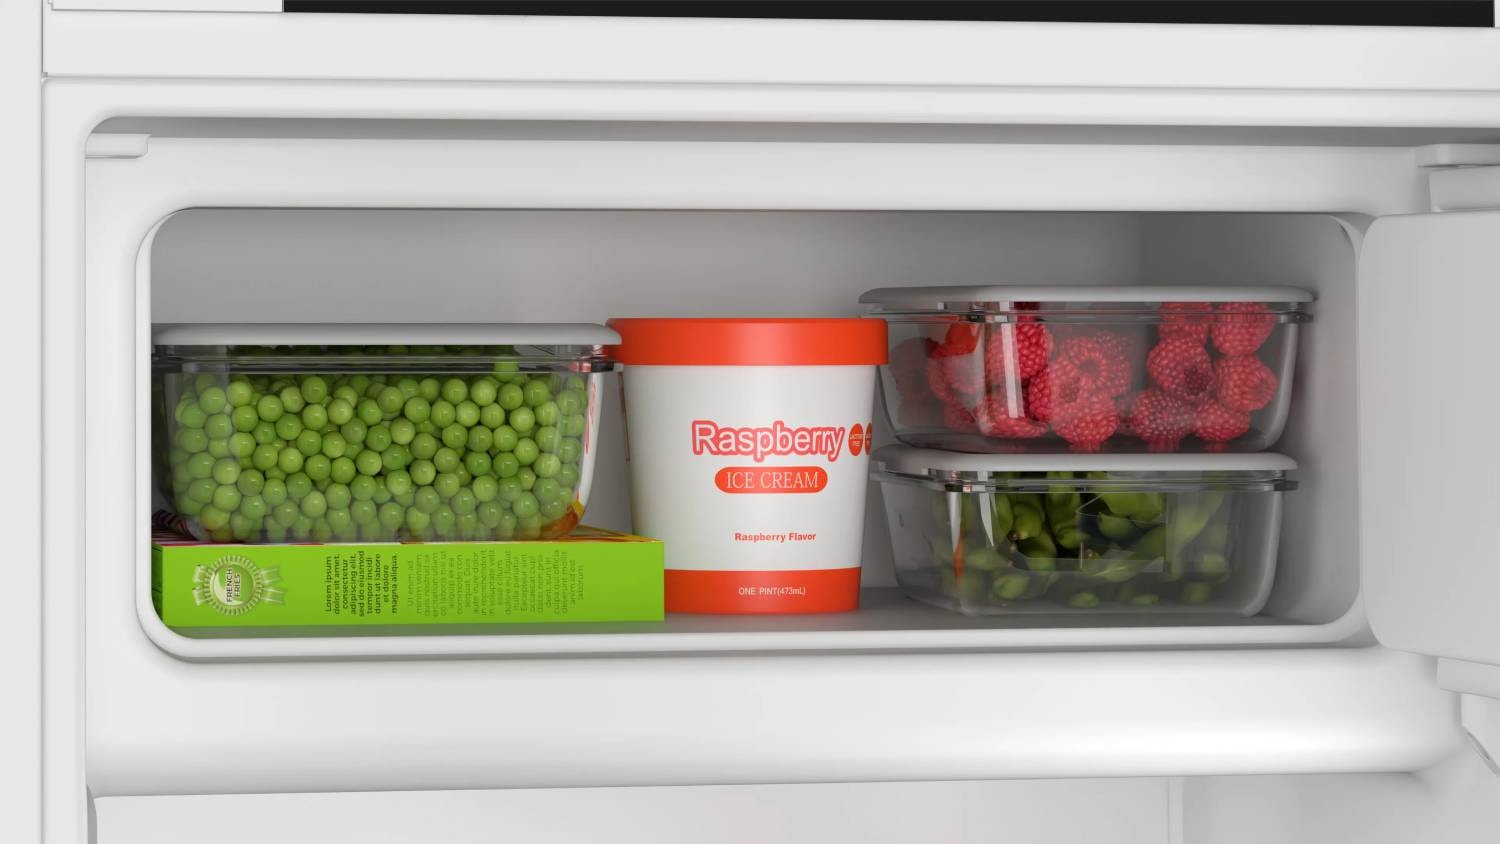 Réfrigérateur 1 porte encastrable kil42vfe0 série 4 tiroir